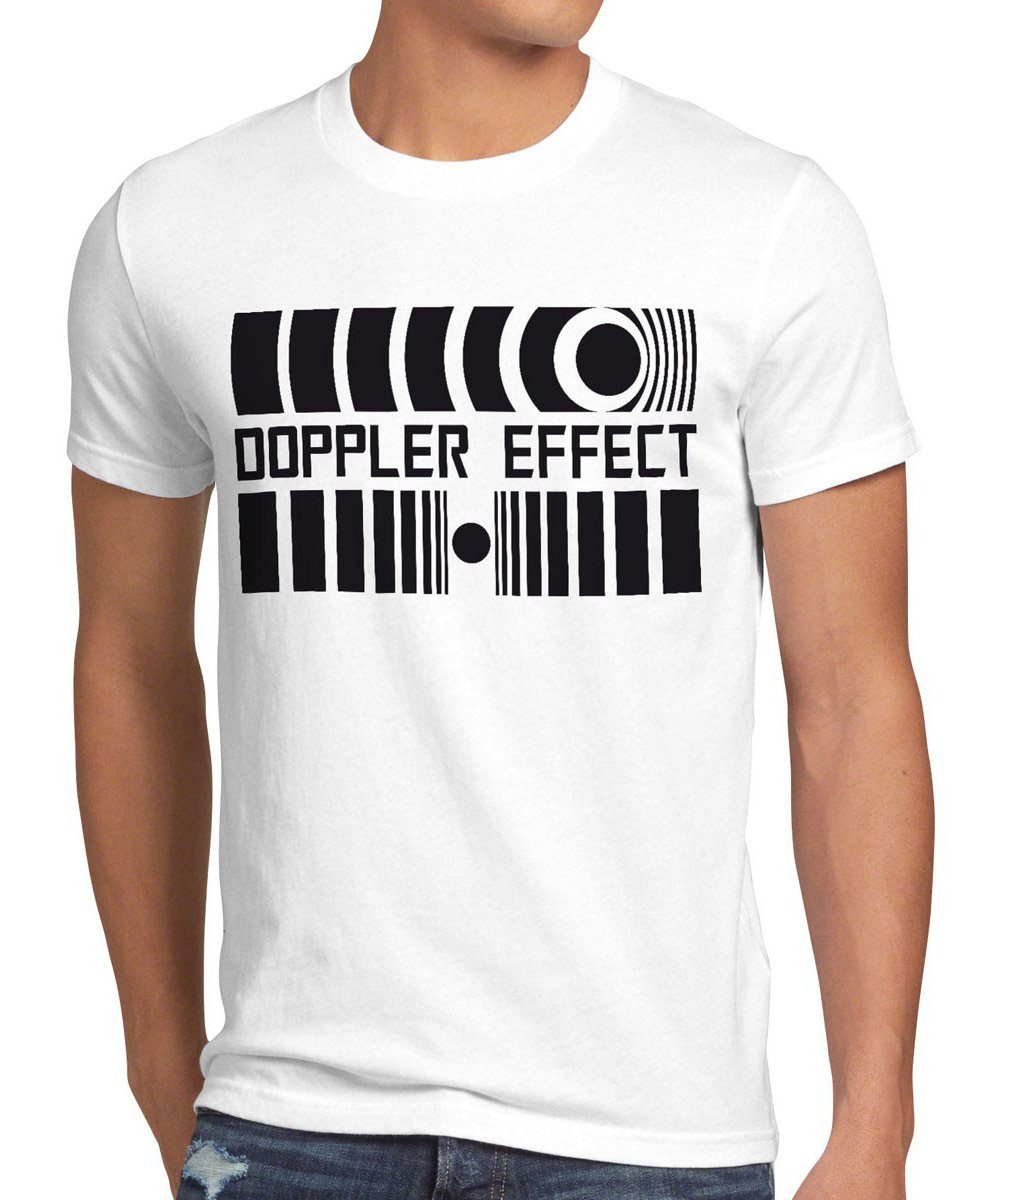 style3 Print-Shirt Herren T-Shirt Schall Big Cooper Sheldon Theory Bang Doppler Effects Effekt tbbt weiß